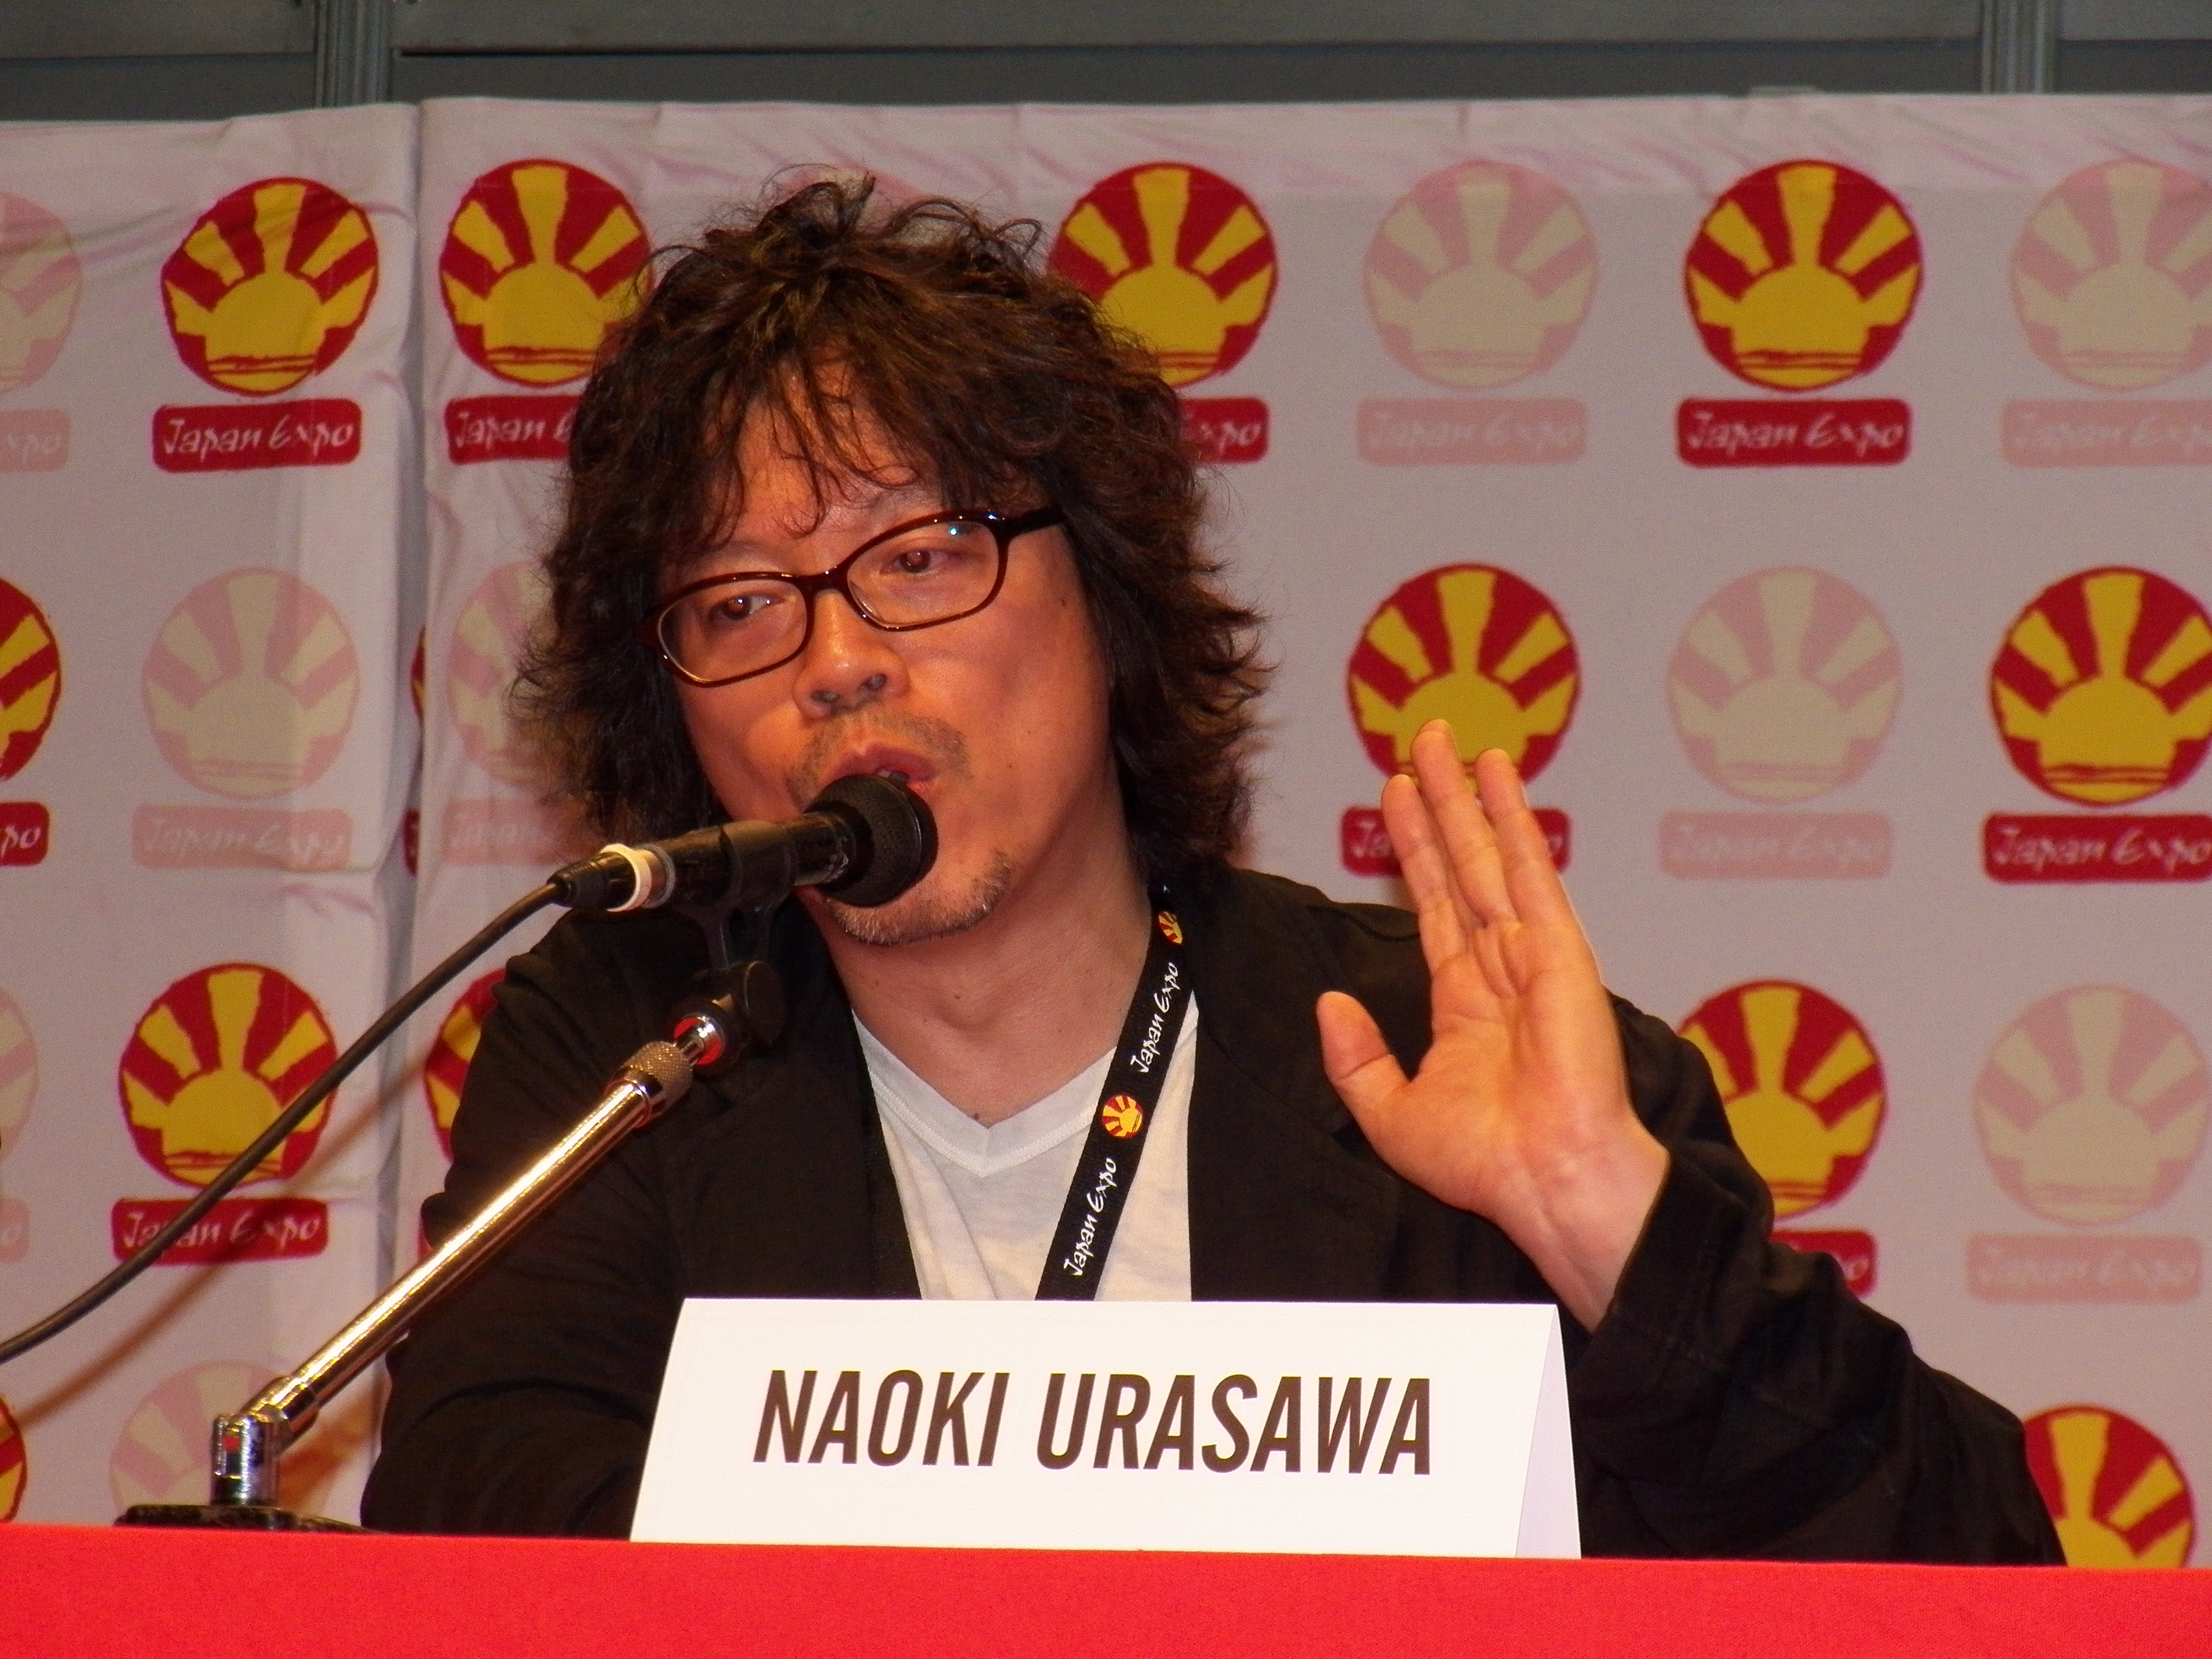 Naoki Urasawa at Japan Expo 2012, Paris (2)